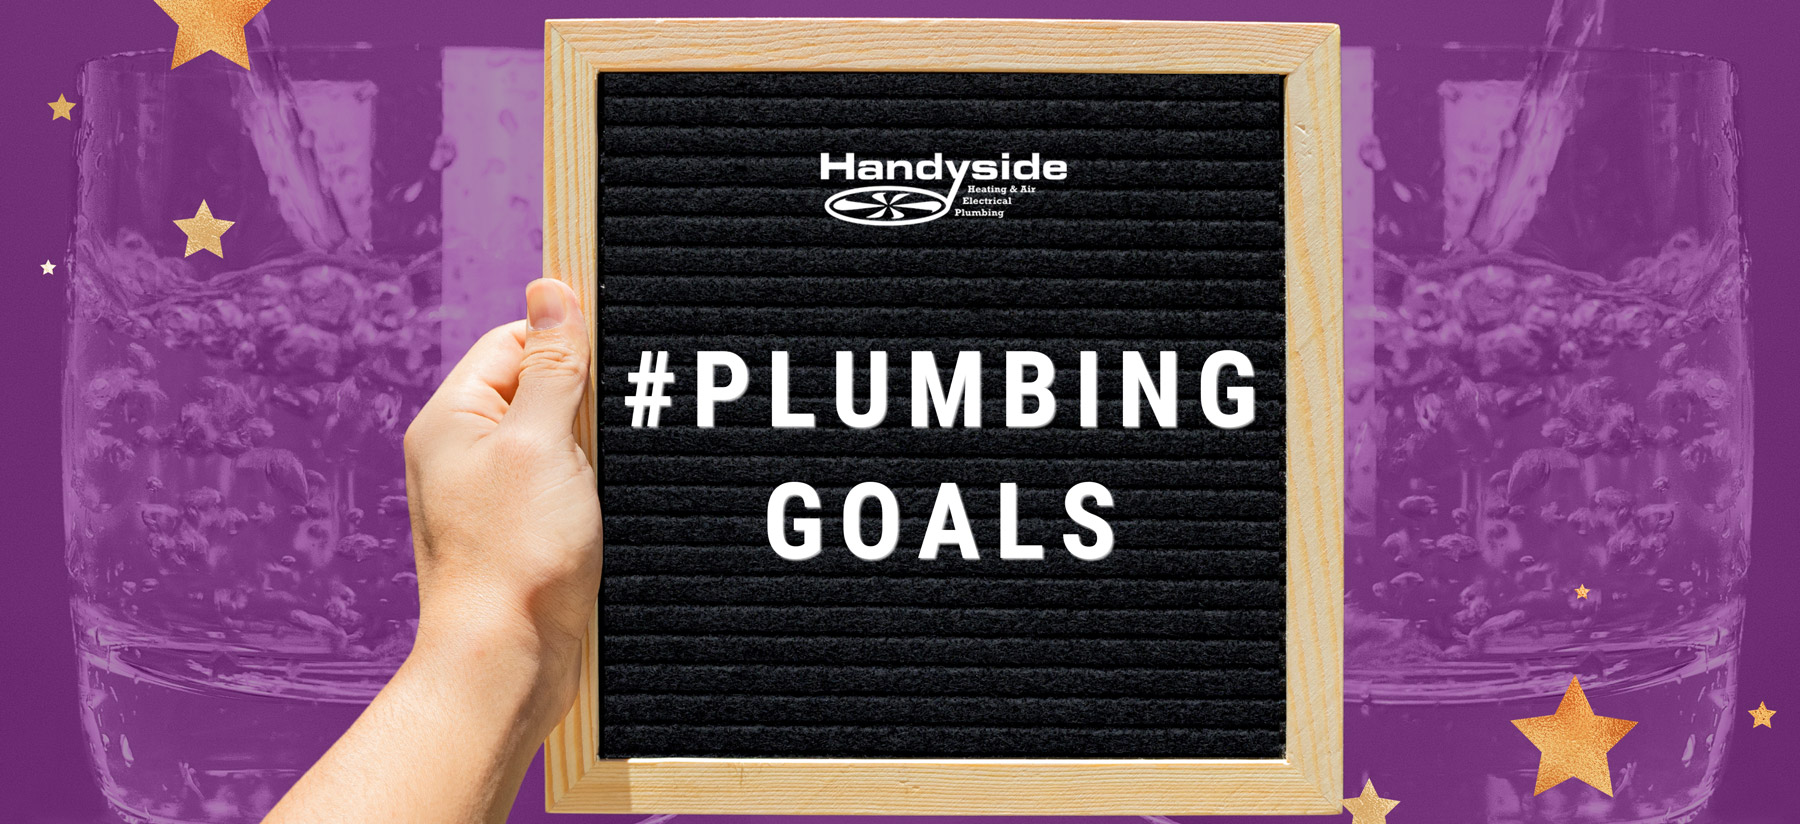 Handyside plumbing resolutions